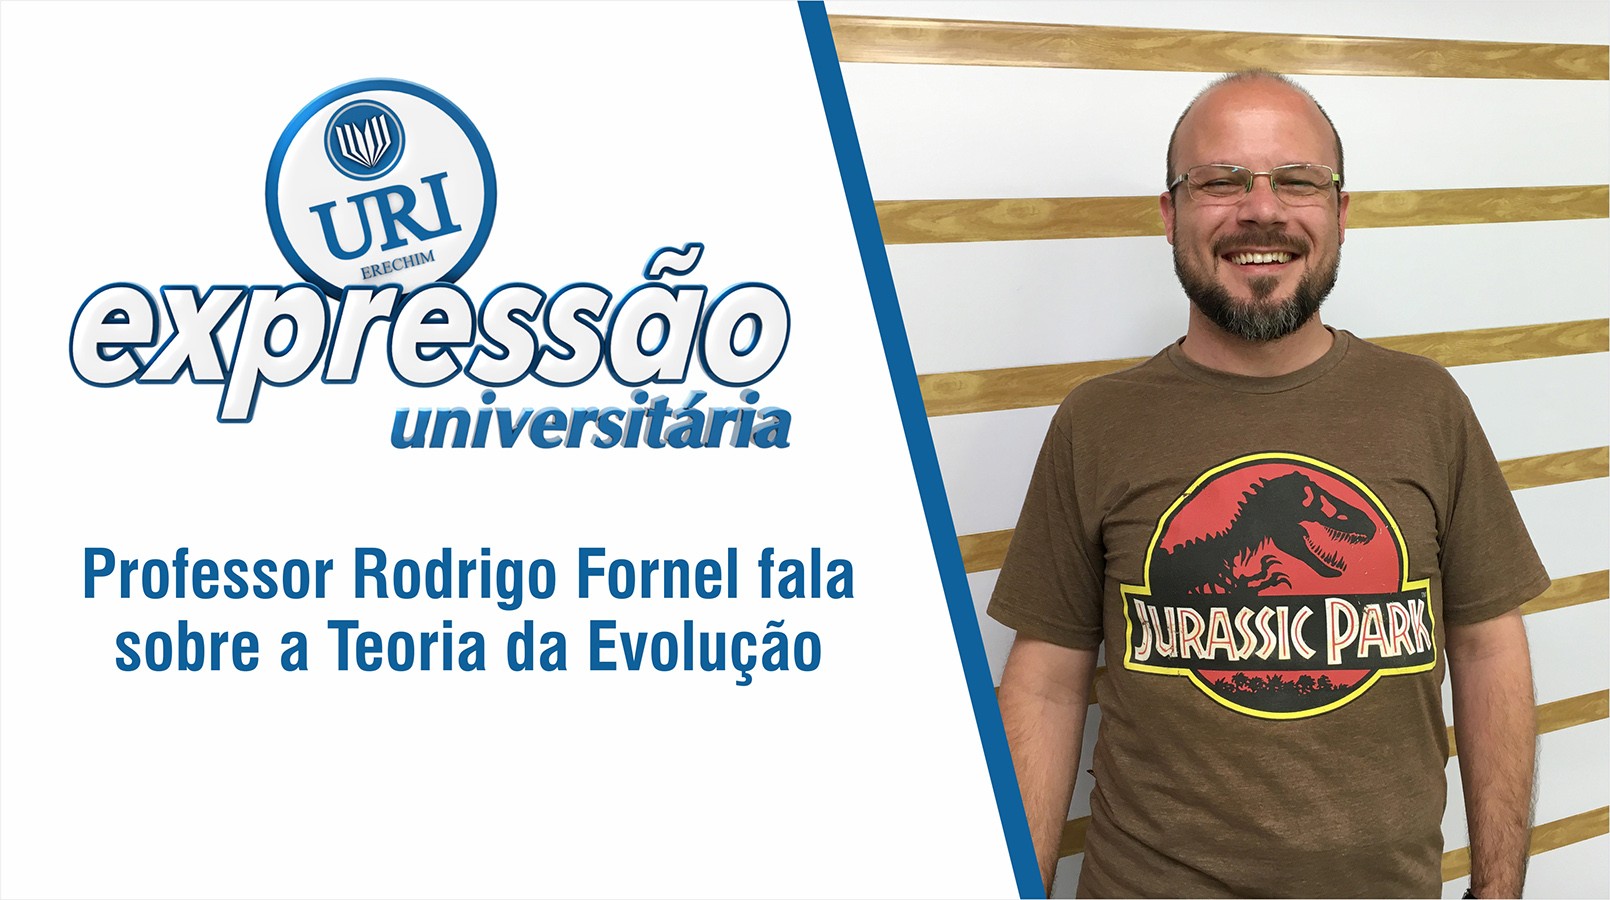 Professor Rodrigo Fornel fala sobre a Teoria da Evoluo